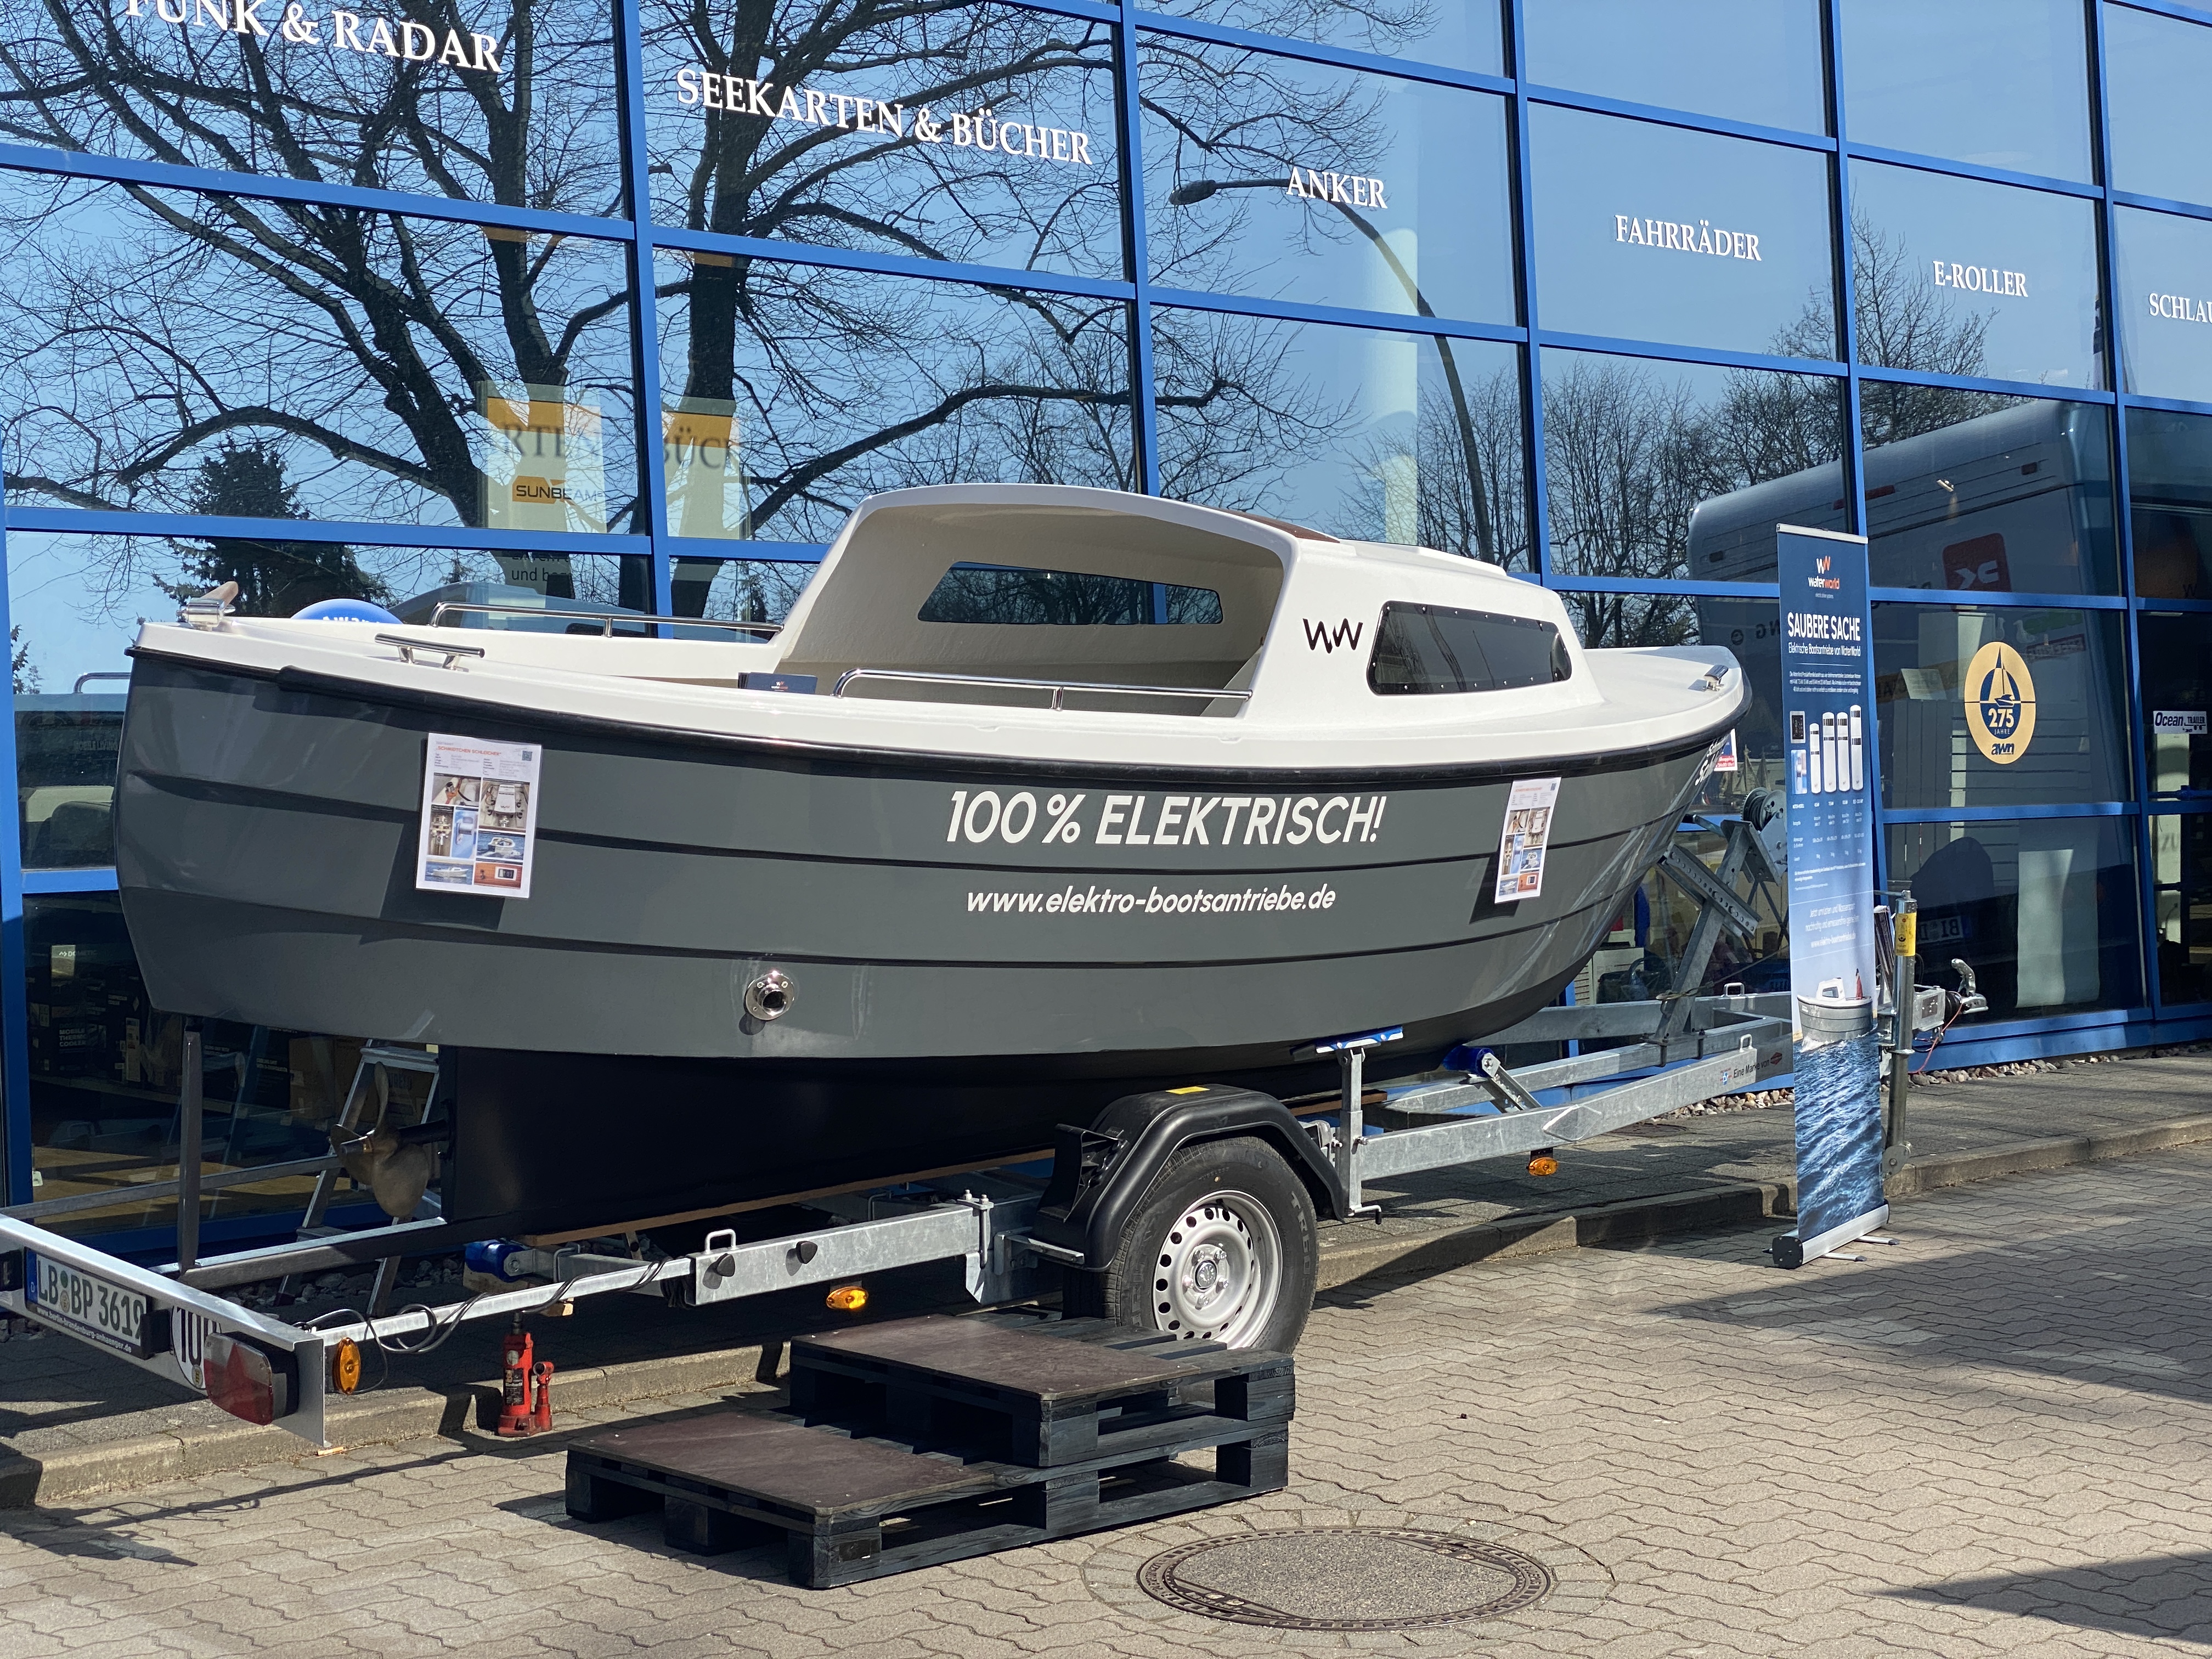 Vermietung Elektroboot | Angelboot Danel 505 (5,05m x 2m mit Kojen und Verdeck) - 1 Tag